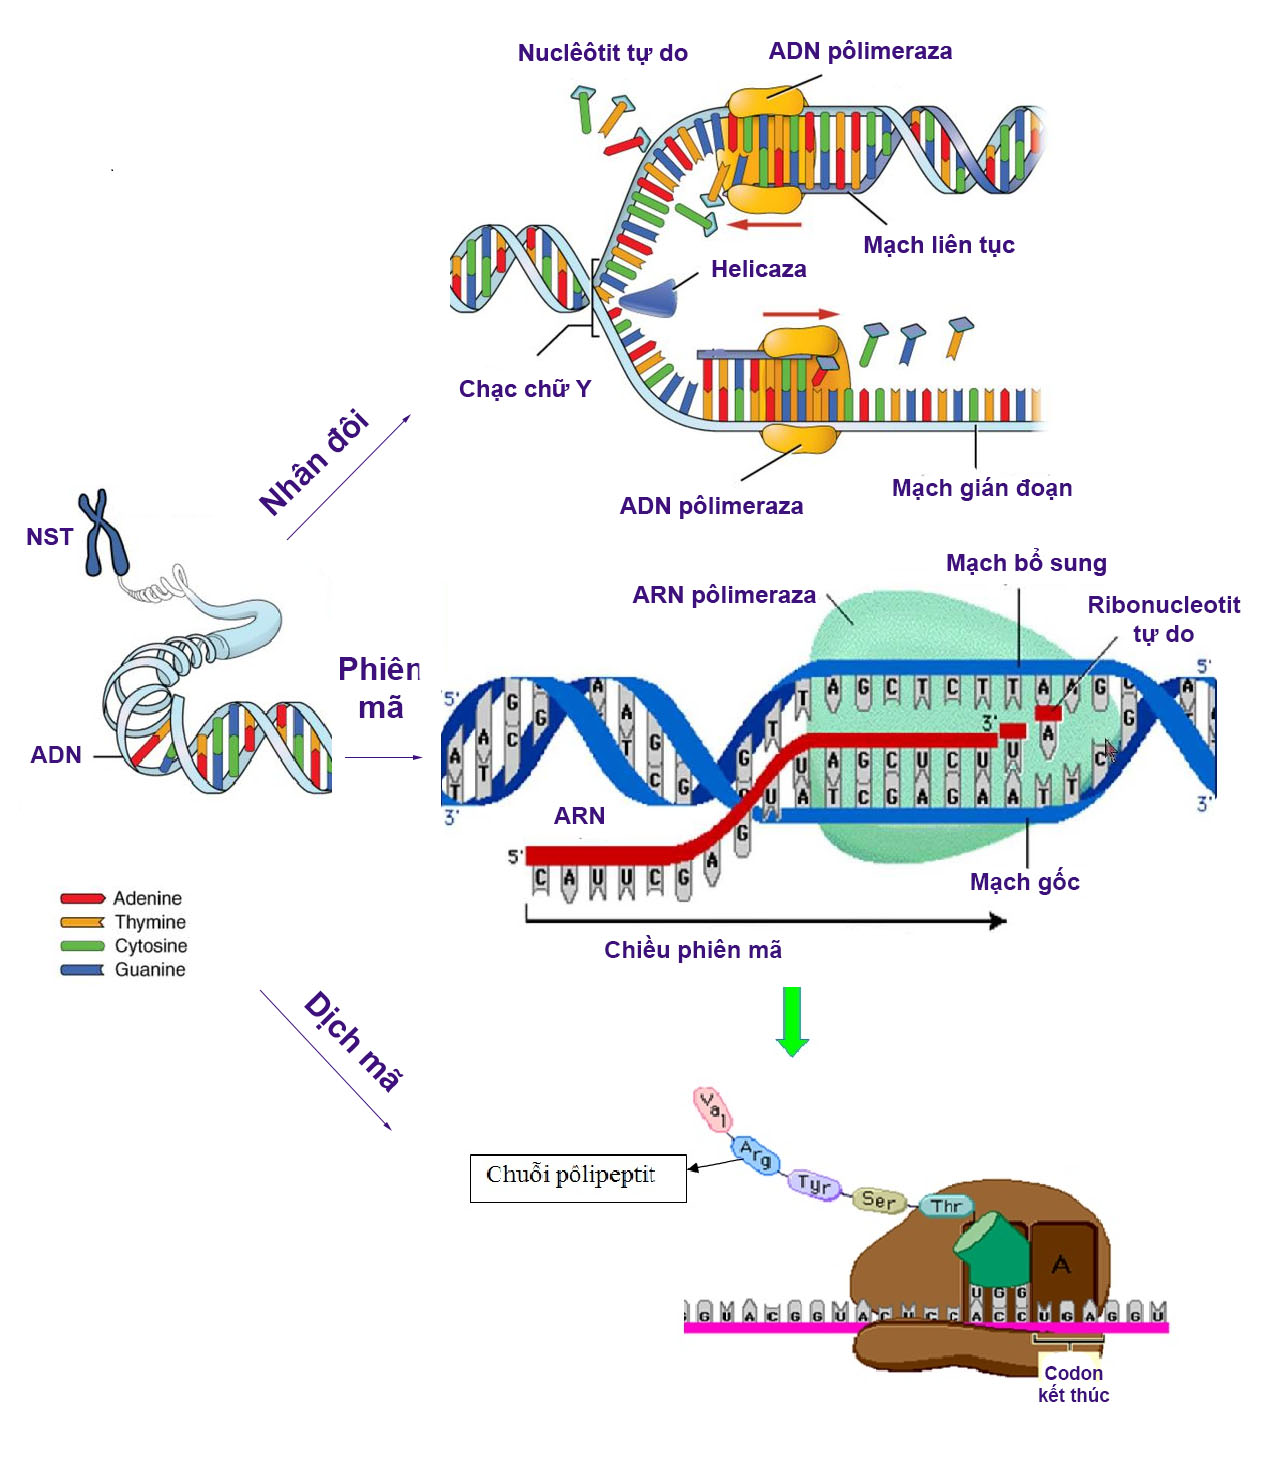 Sơ đồ các cơ chế di truyền ở cấp độ phân tử